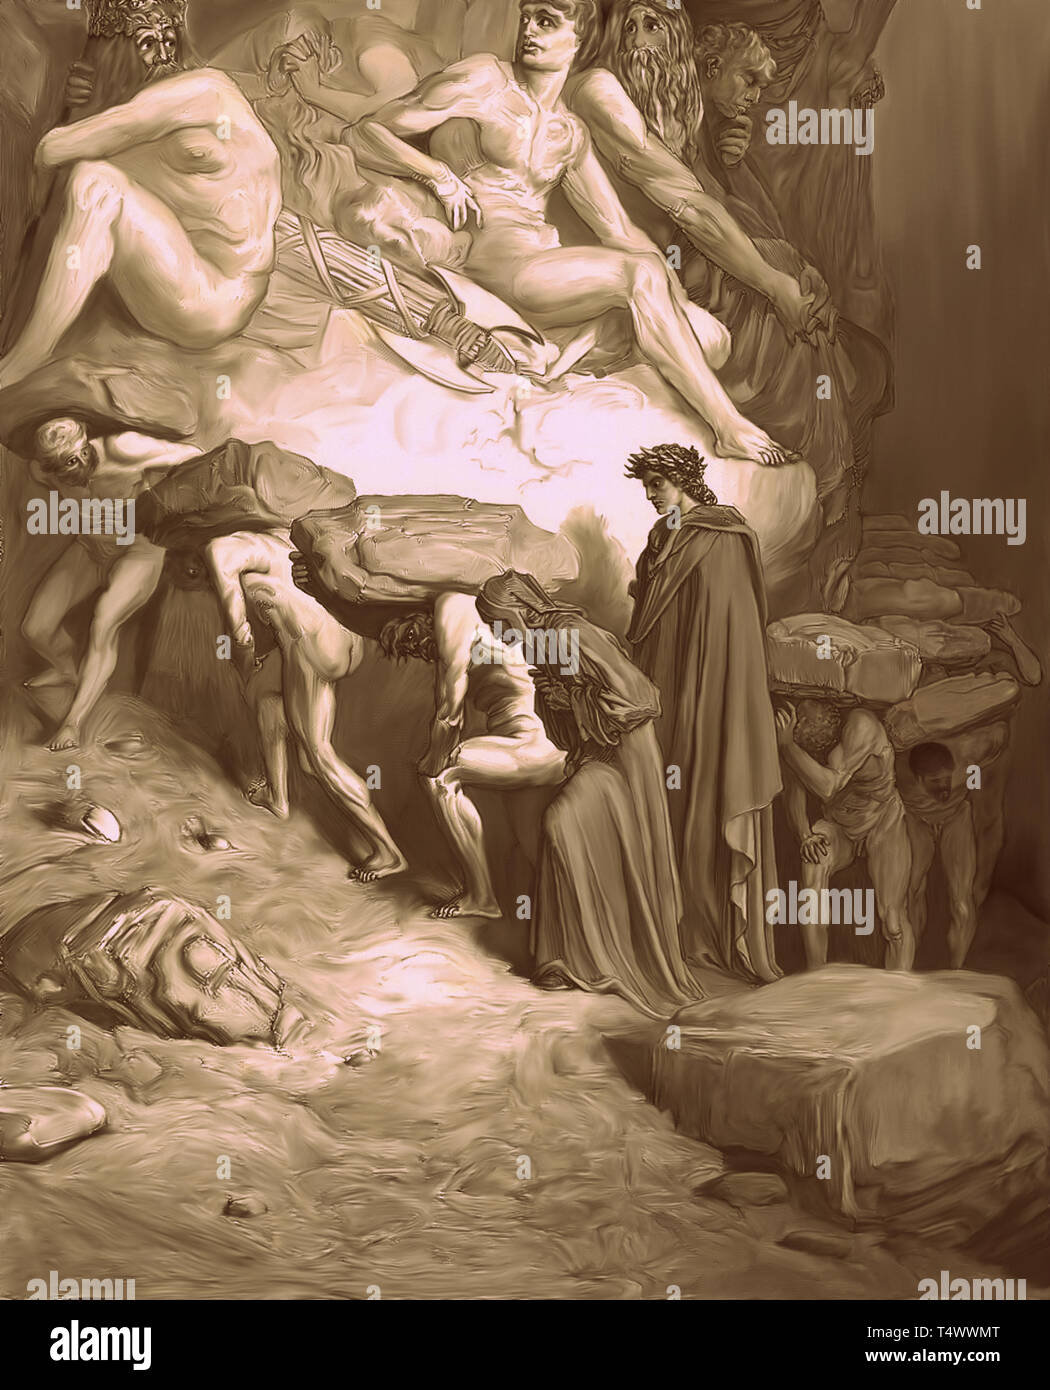 La caduta di orgoglio - interpretazione moderna di un classico della pittura di Gustave Dorè della Divina Commedia, il thriller. Foto Stock